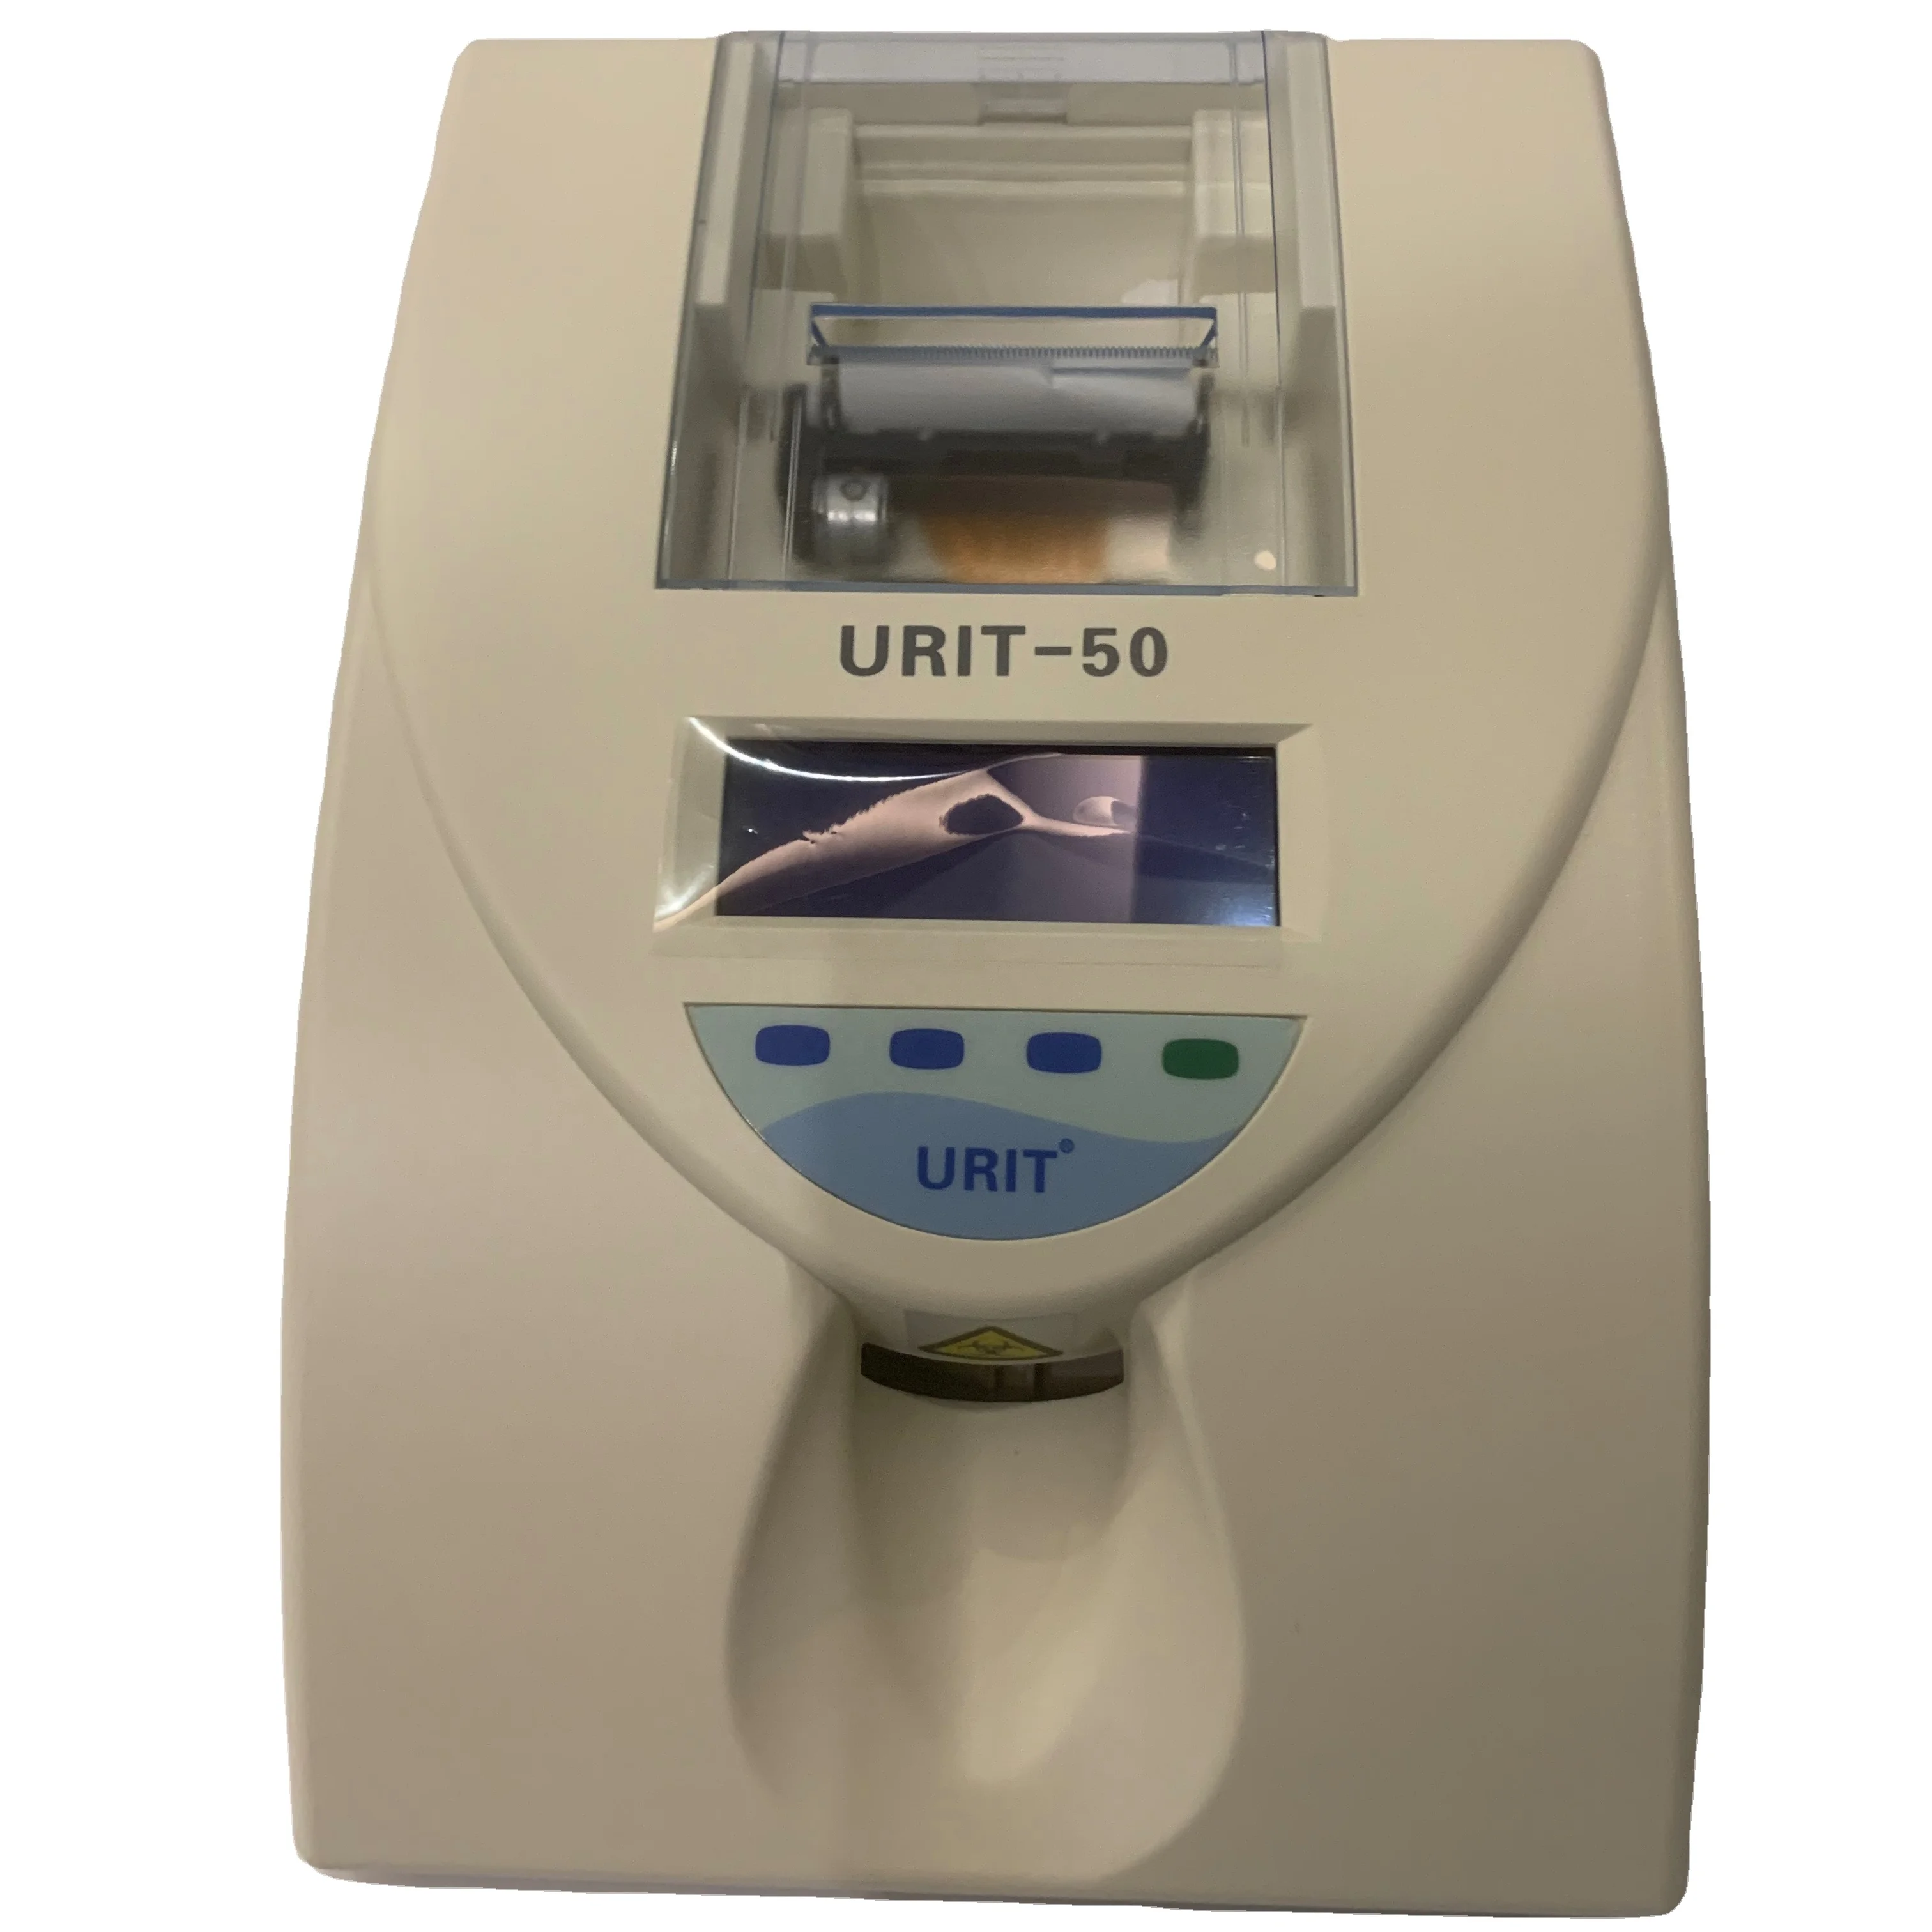 Хорошее качество, Портативный лабораторный анализатор мочи Urit 50, цена с тест-полосками, аппарат для анализа мочи urit 14G, urit-50